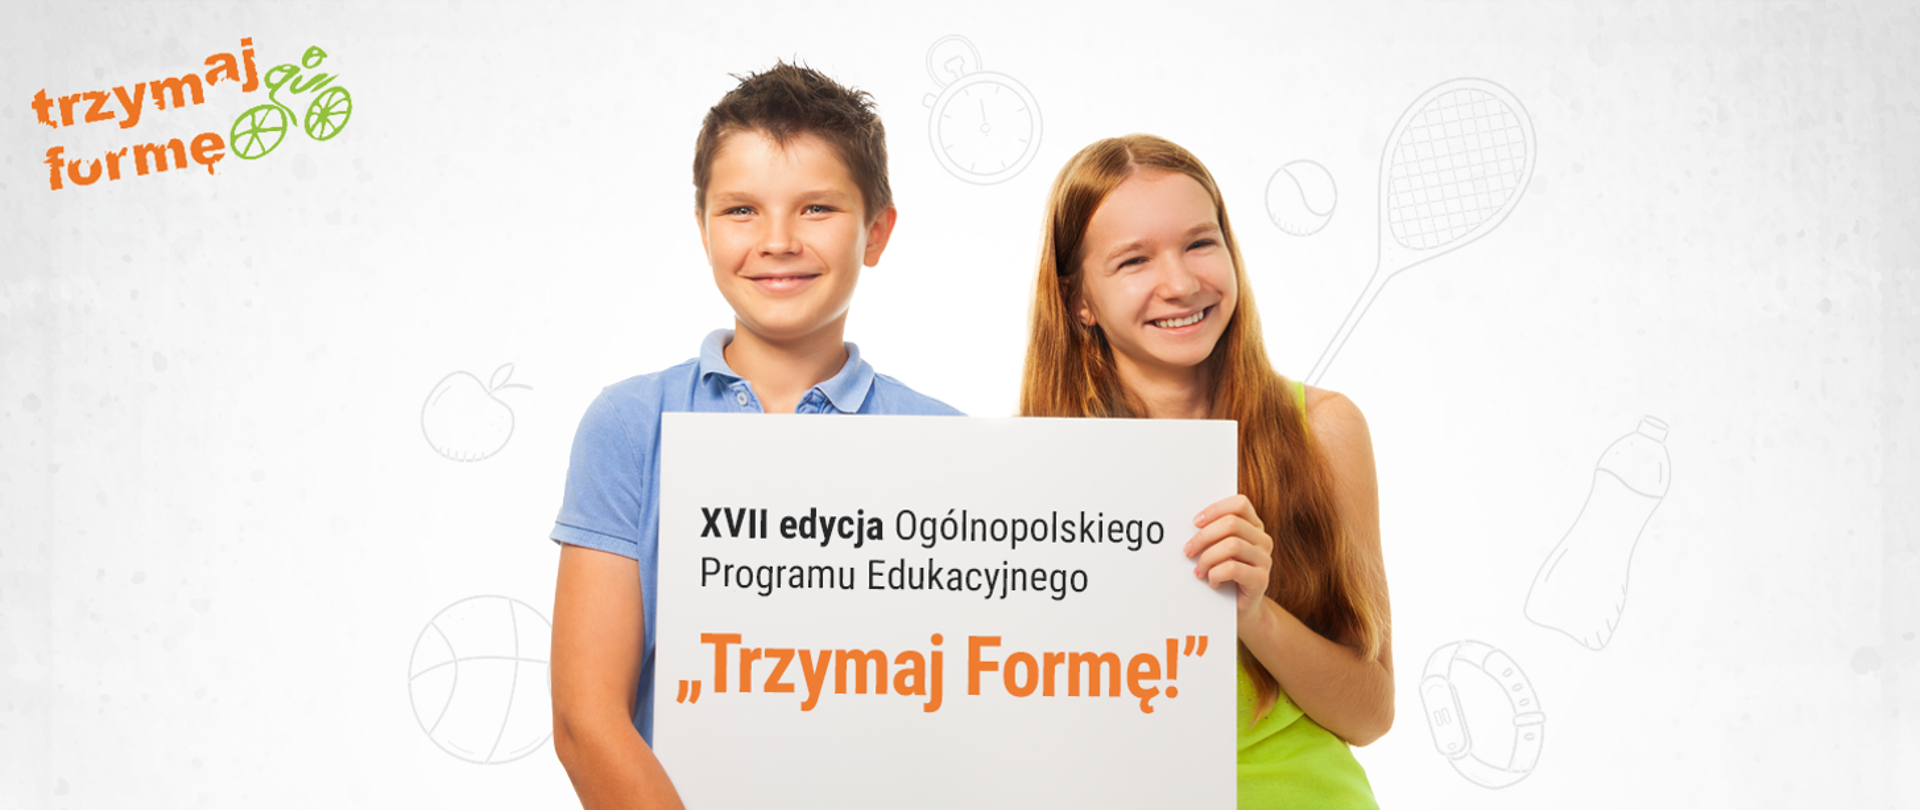 Dziewczynka i chłopiec, uśmiechnięci trzymają baner z napisem ,,XVII edycja Ogólnopolskiego Programu Edukacyjnego Trzymaj Formę!"